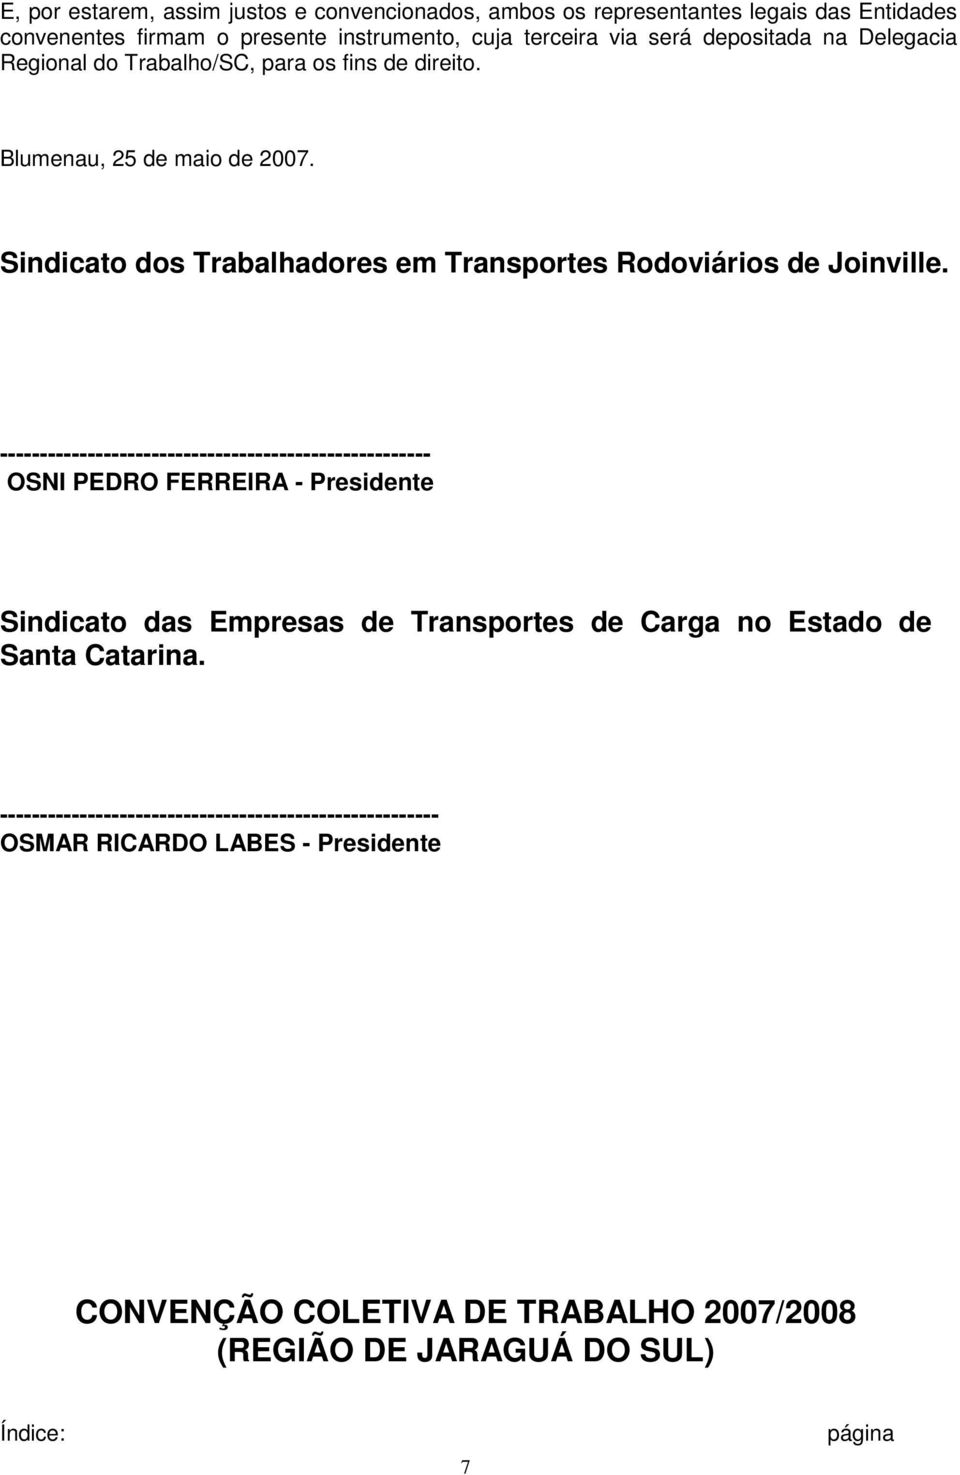 Sindicato dos Trabalhadores em Transportes Rodoviários de Joinville.